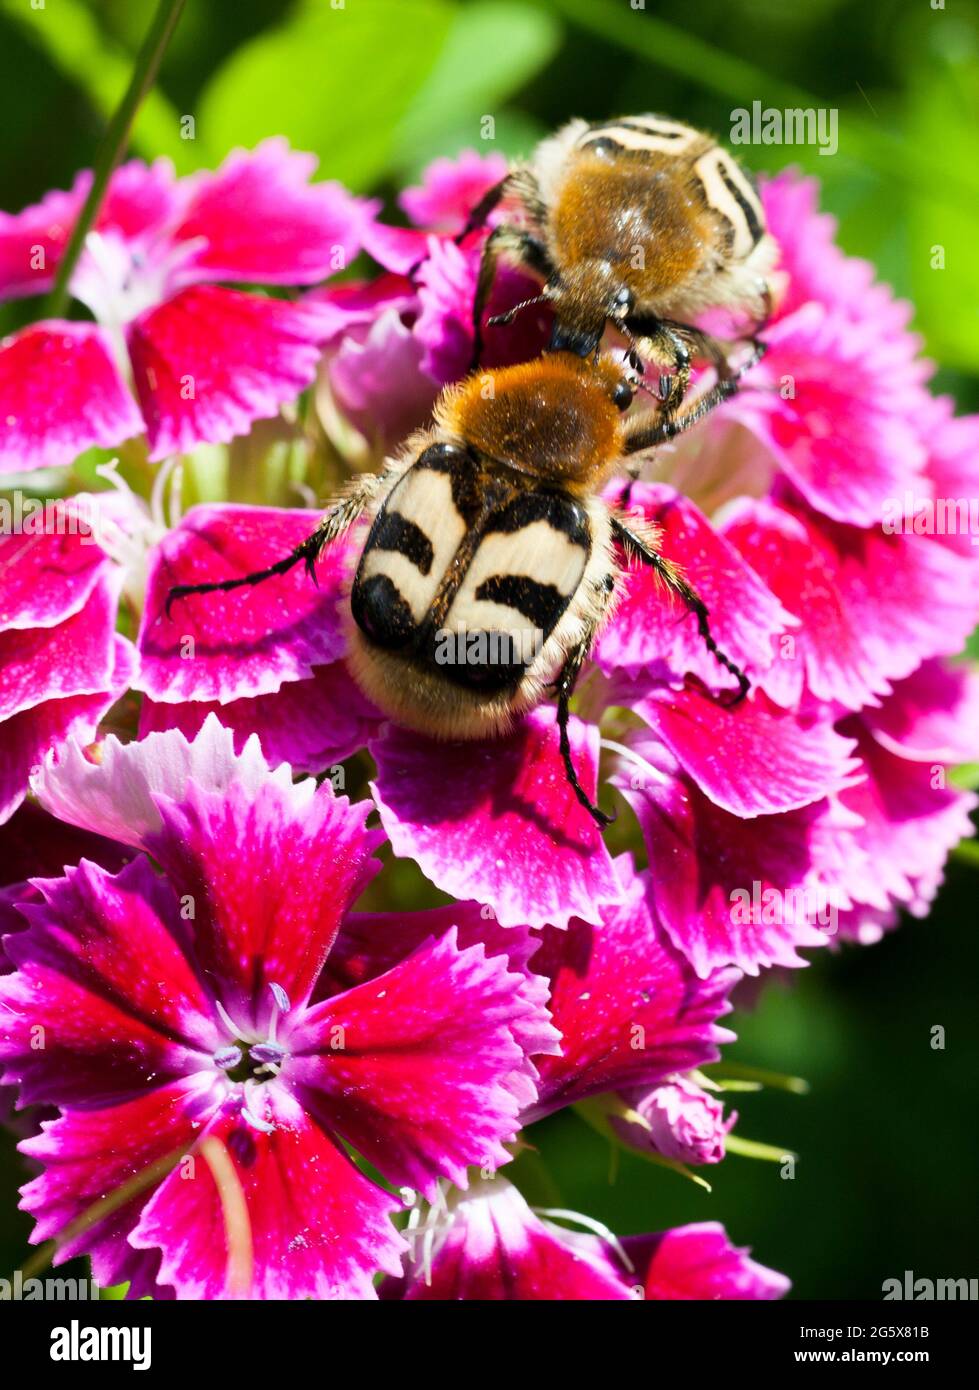 TRICHIUS FASCIATUS Eurasian Bee beetle on flower Stock Photo